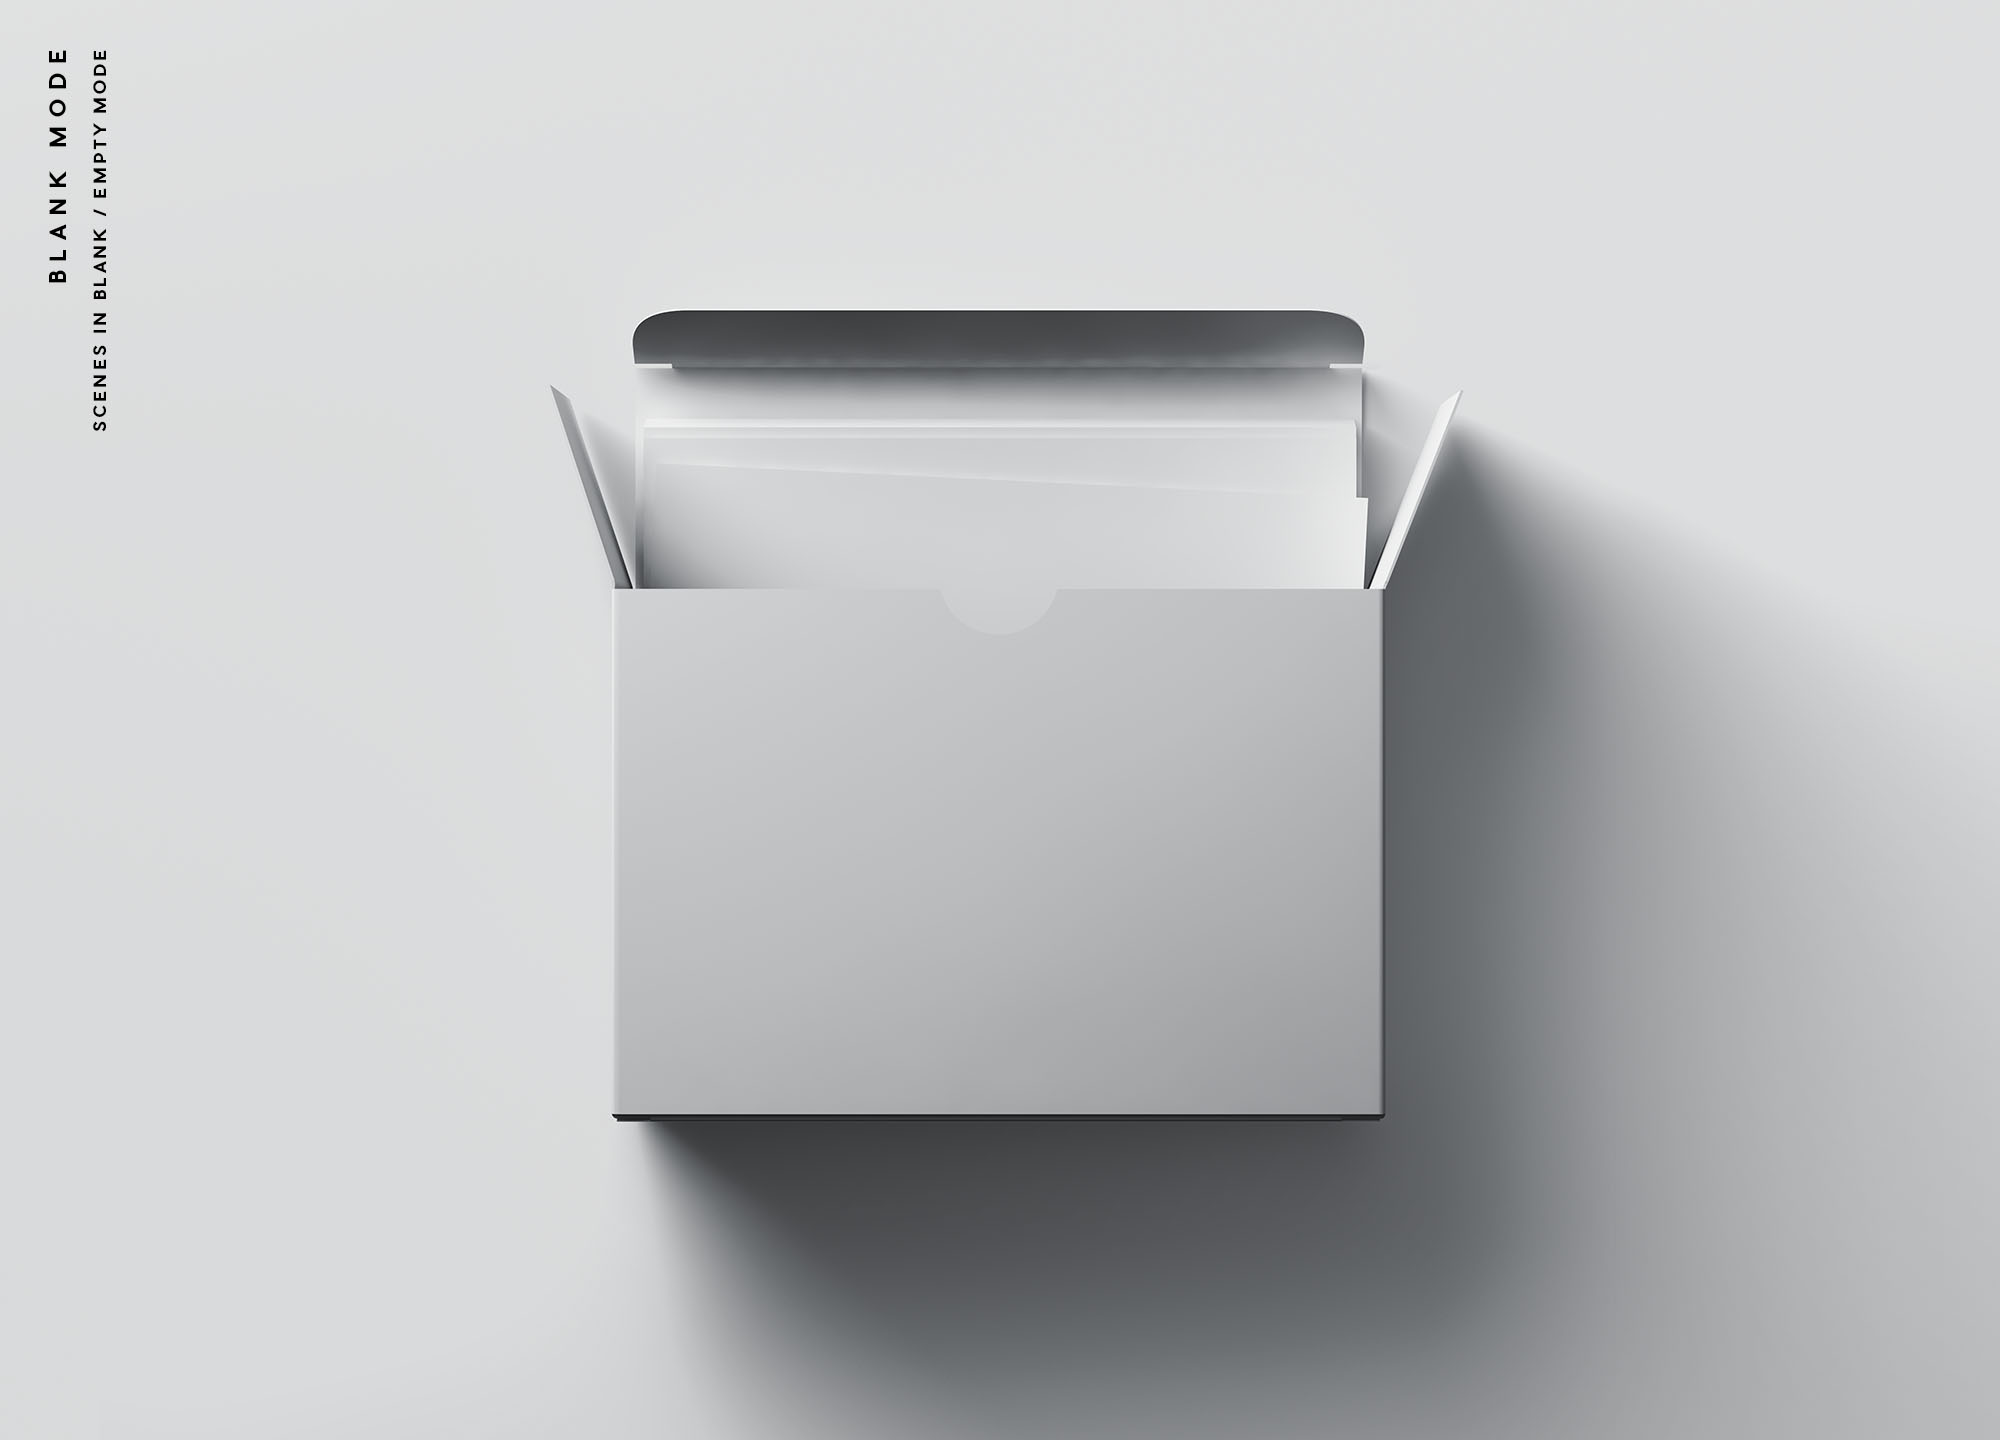 卡片包装盒外观设计效果图素材库精选 Card Box Mockup插图(8)